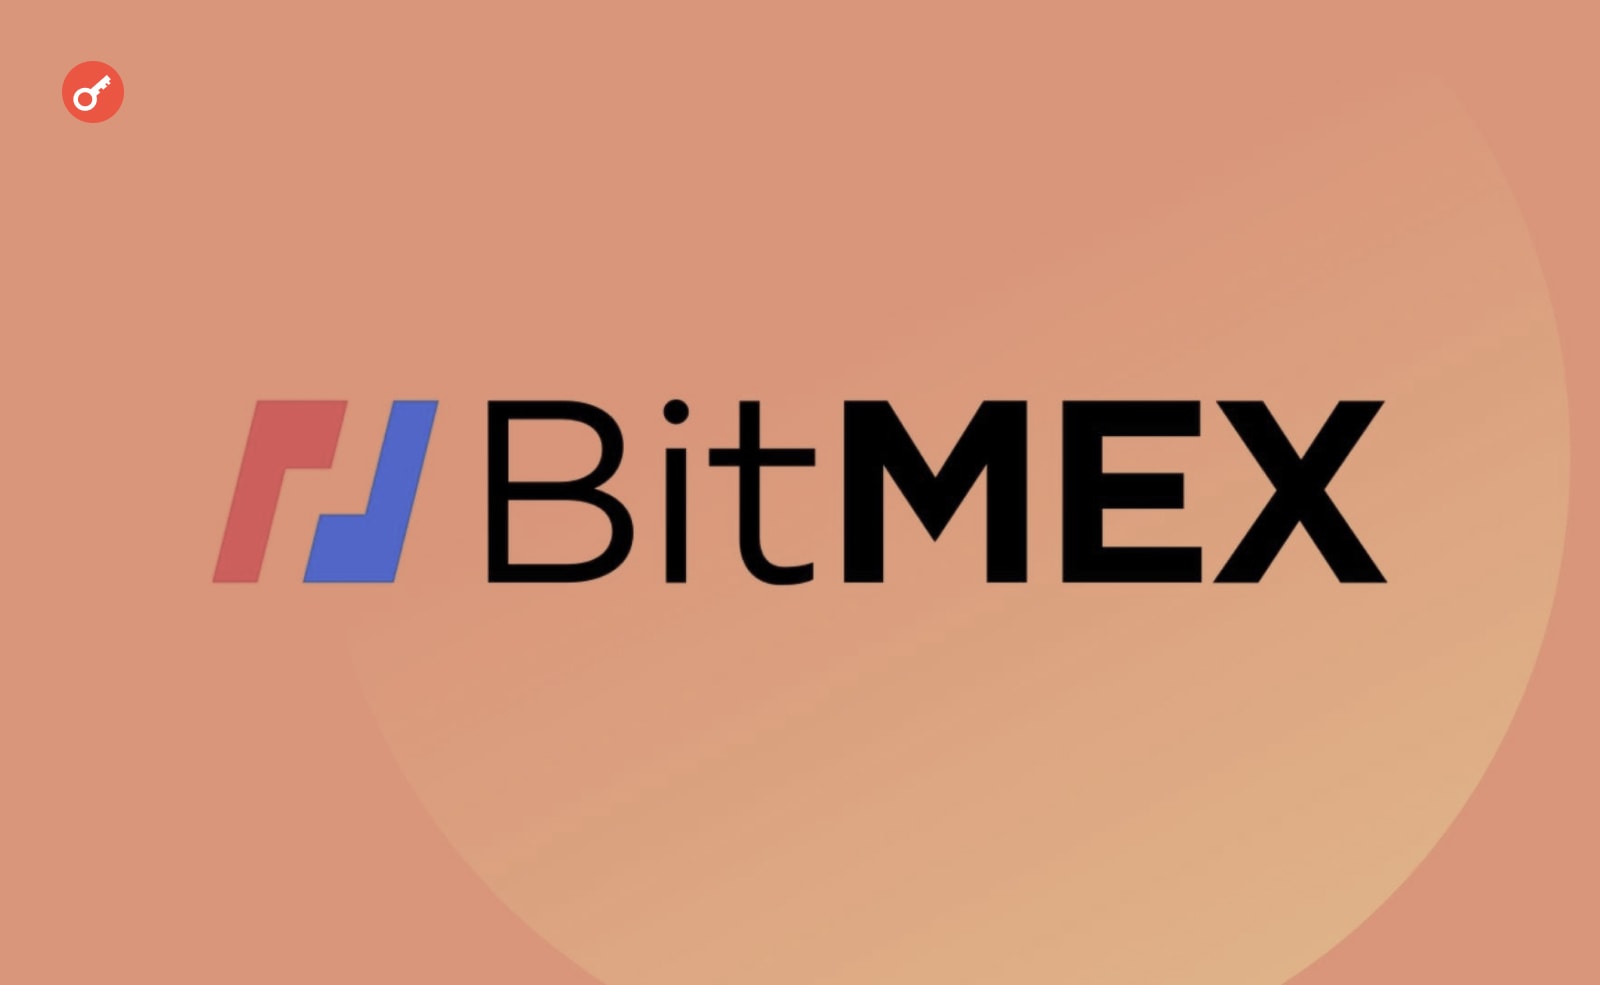 CEO BitMEX: «Ми пройшли через пекло. Але зараз є ознаки поліпшення ситуації». Головний колаж новини.